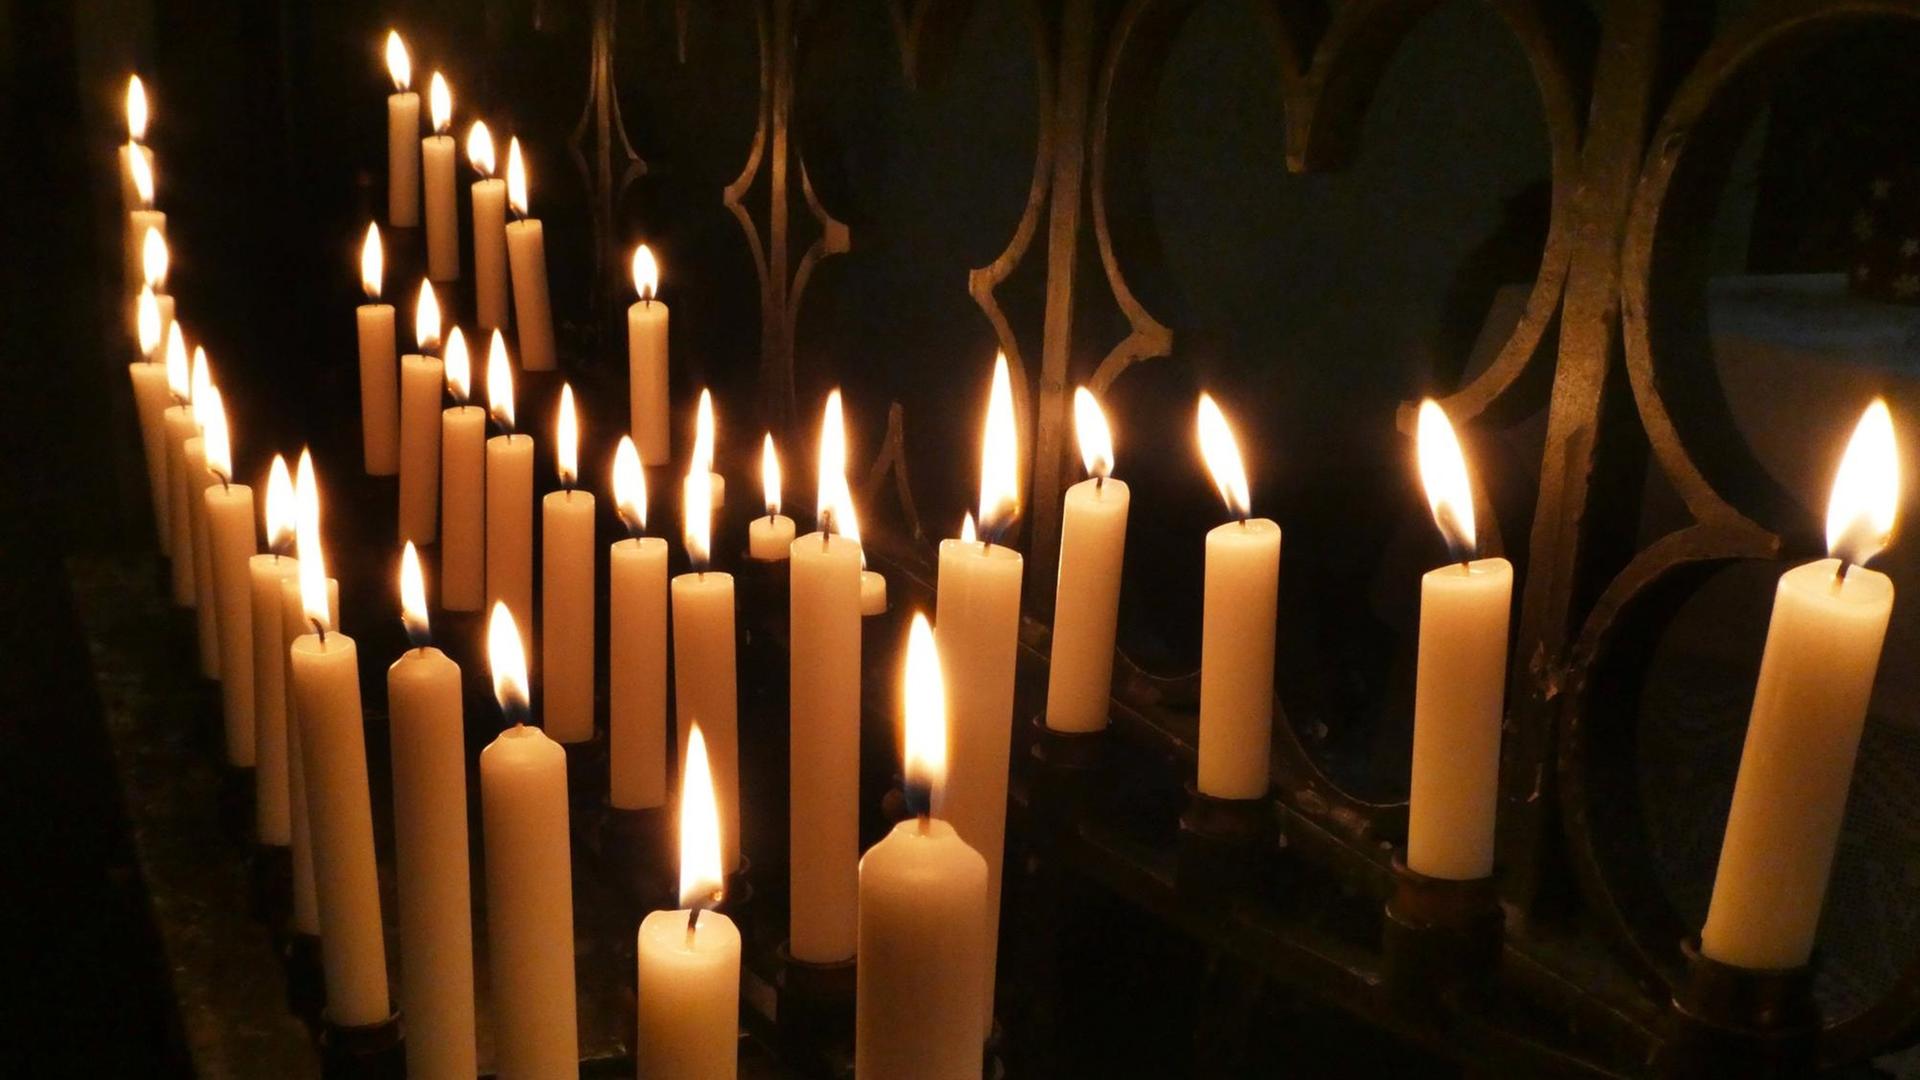 Einige Kerzen brennen in einer dunklen Ecke einer Kirche.